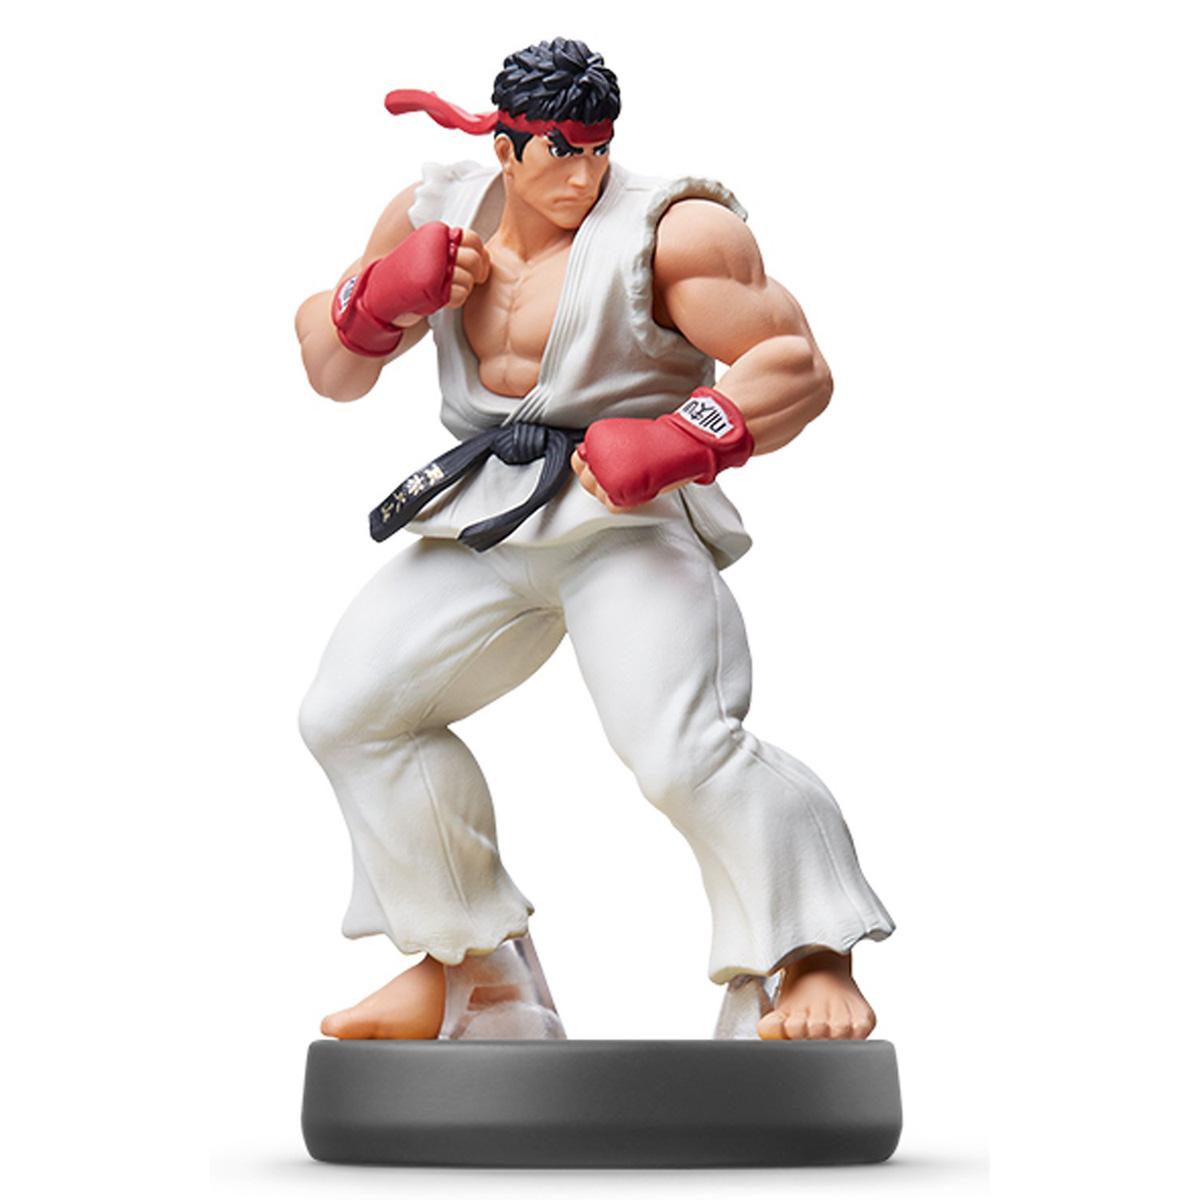 Ryu amiibo Figure for $5.99